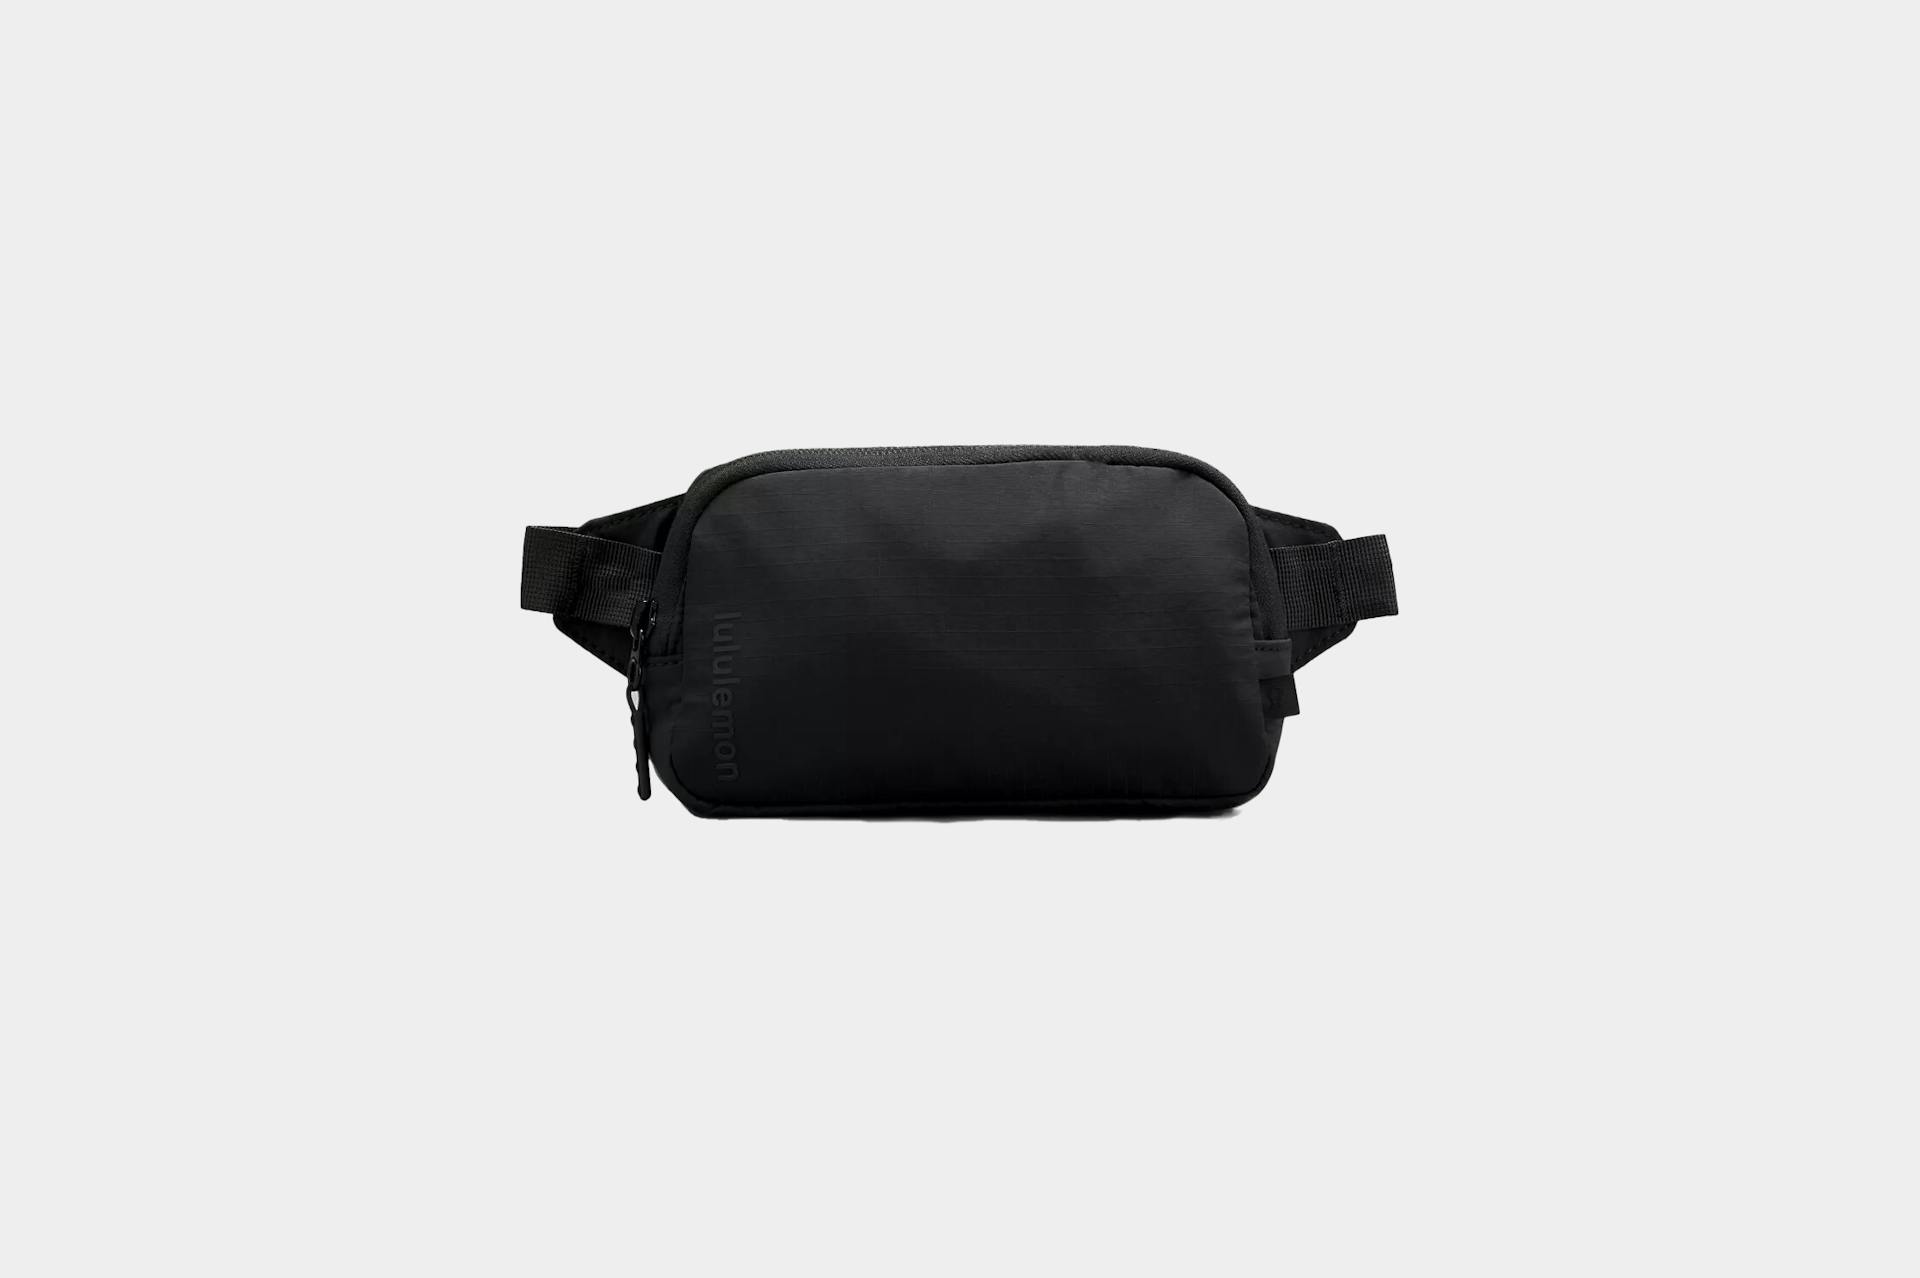 lululemon Mini Belt Bag Review | Pack Hacker